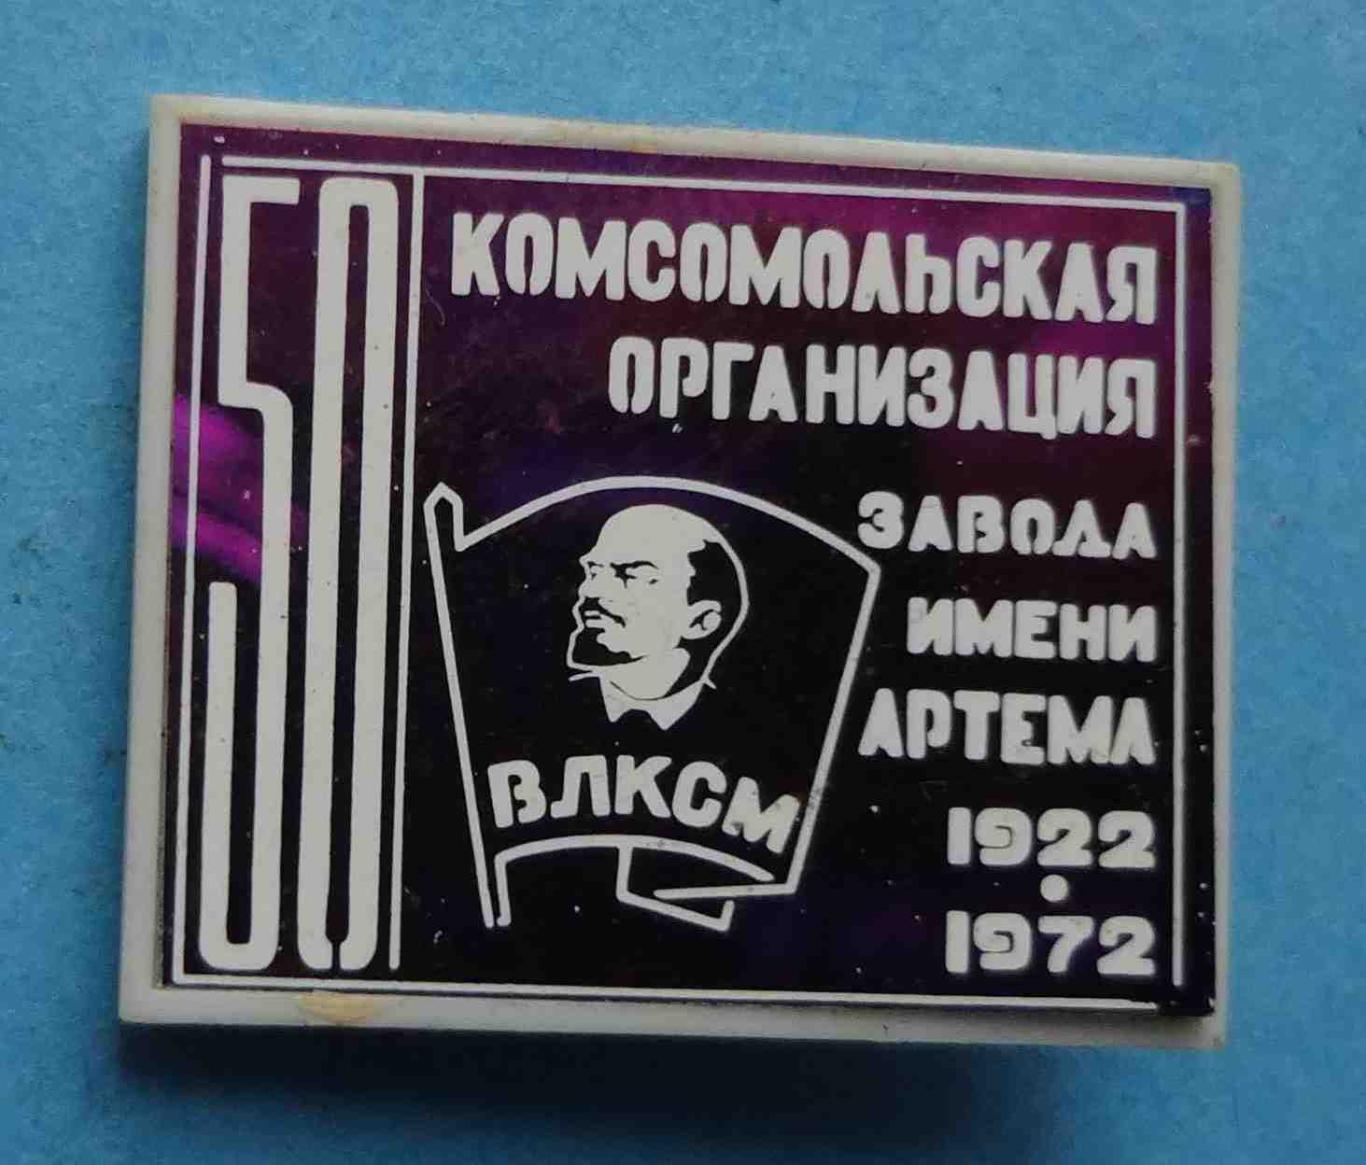 50 лет Комсомольская организация завода им Артема 1922-1972 Ленин ВЛКСМ 2 (10)